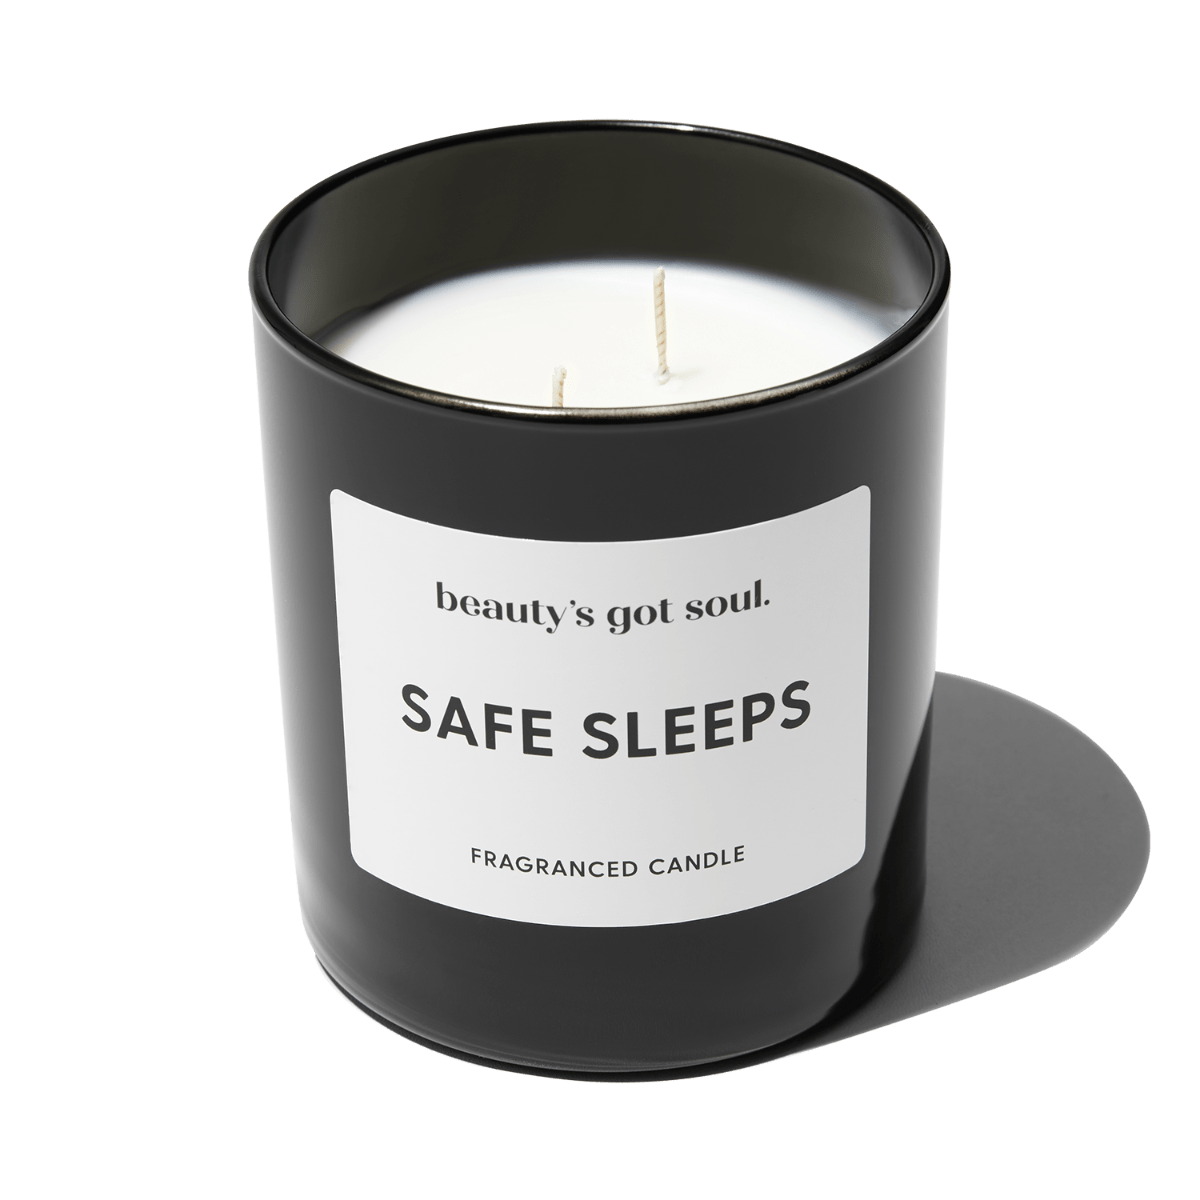 Safe Sleep Maxi Candle 290g | Tuberose Jasmine Orange Flower